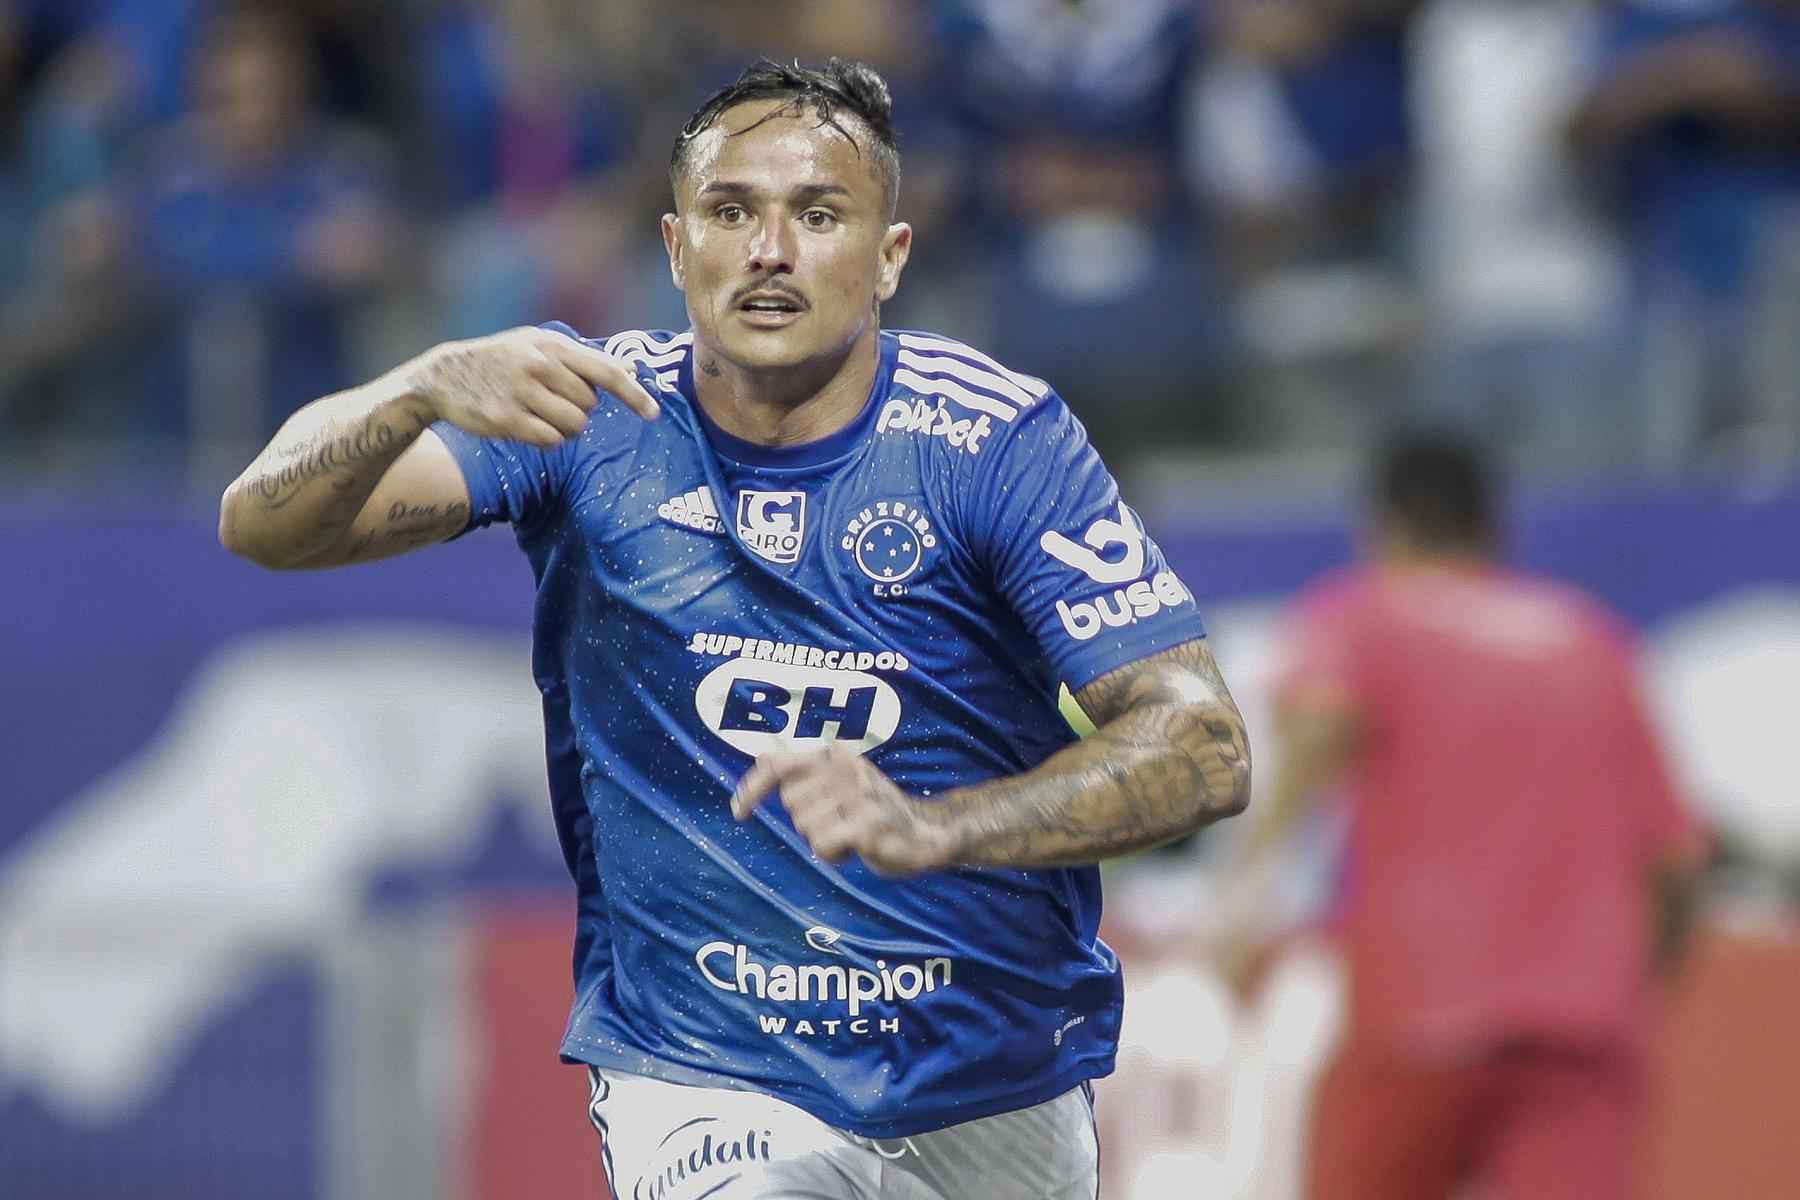 Patrocínio da Cimed renderá ao Cruzeiro cerca de R$ 5 milhões - Staff Images/Cruzeiro